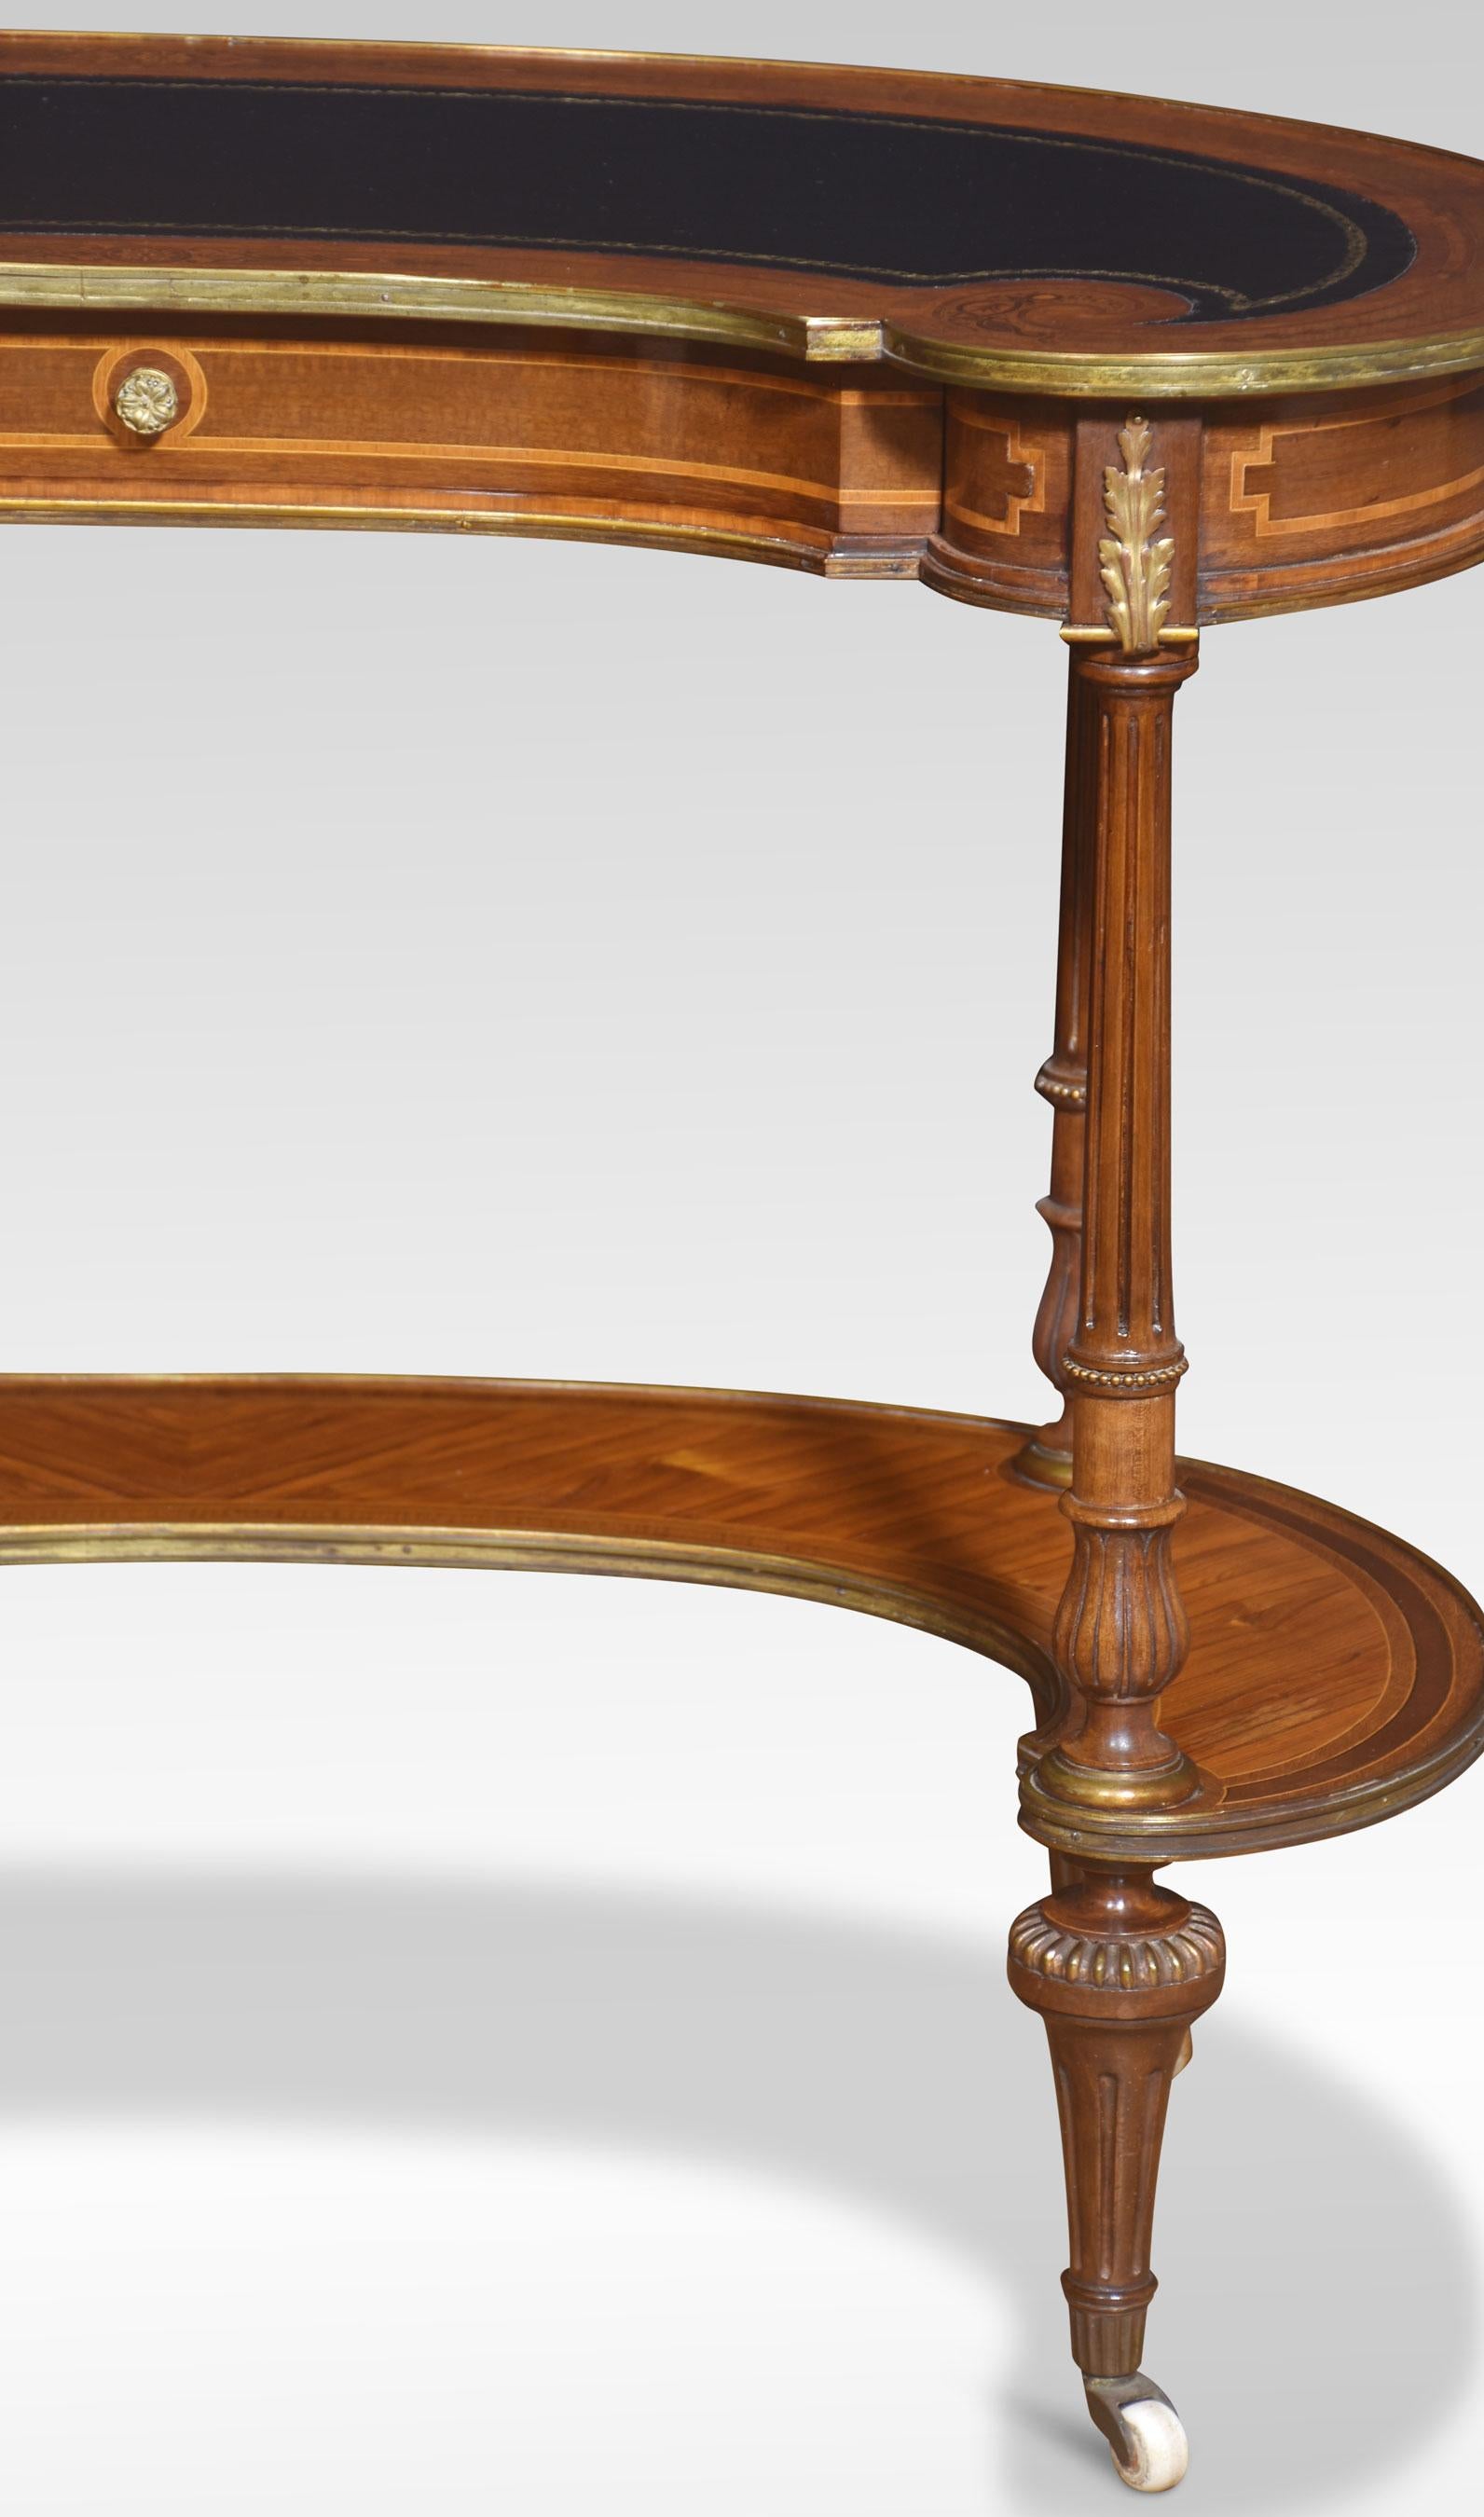 Nierenförmiger Schreibtisch aus Nussbaumholz (Walnuss)